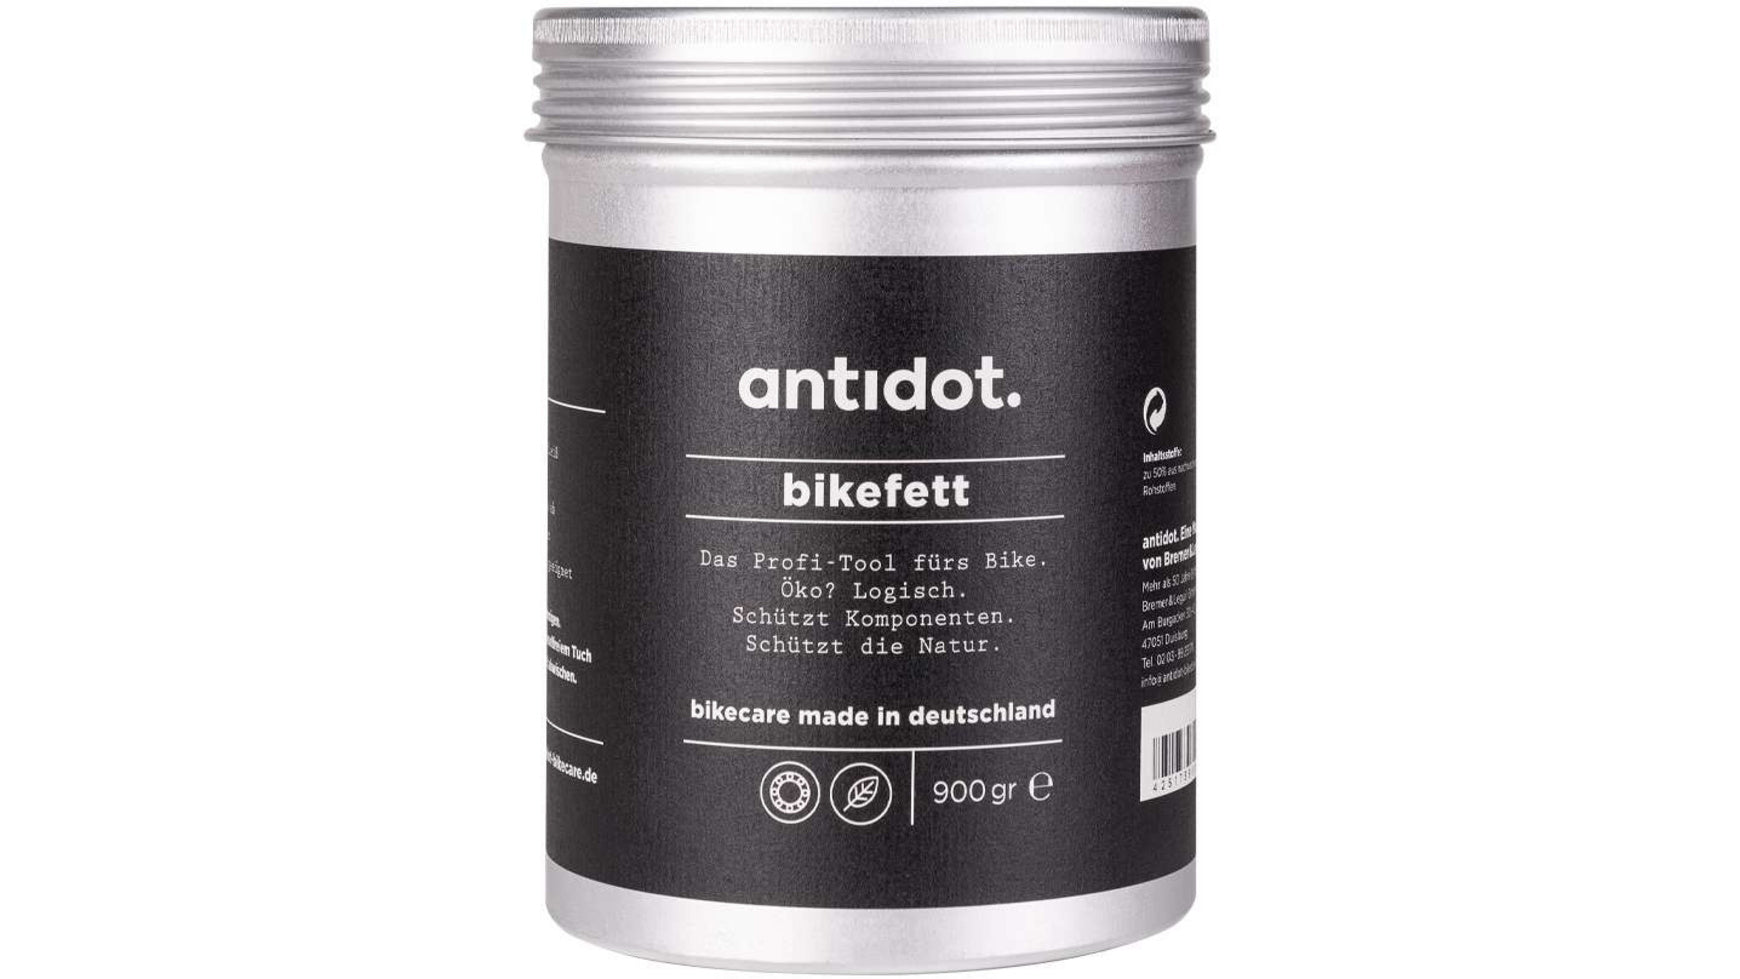 Antidot. Bikefett 900g online kaufen